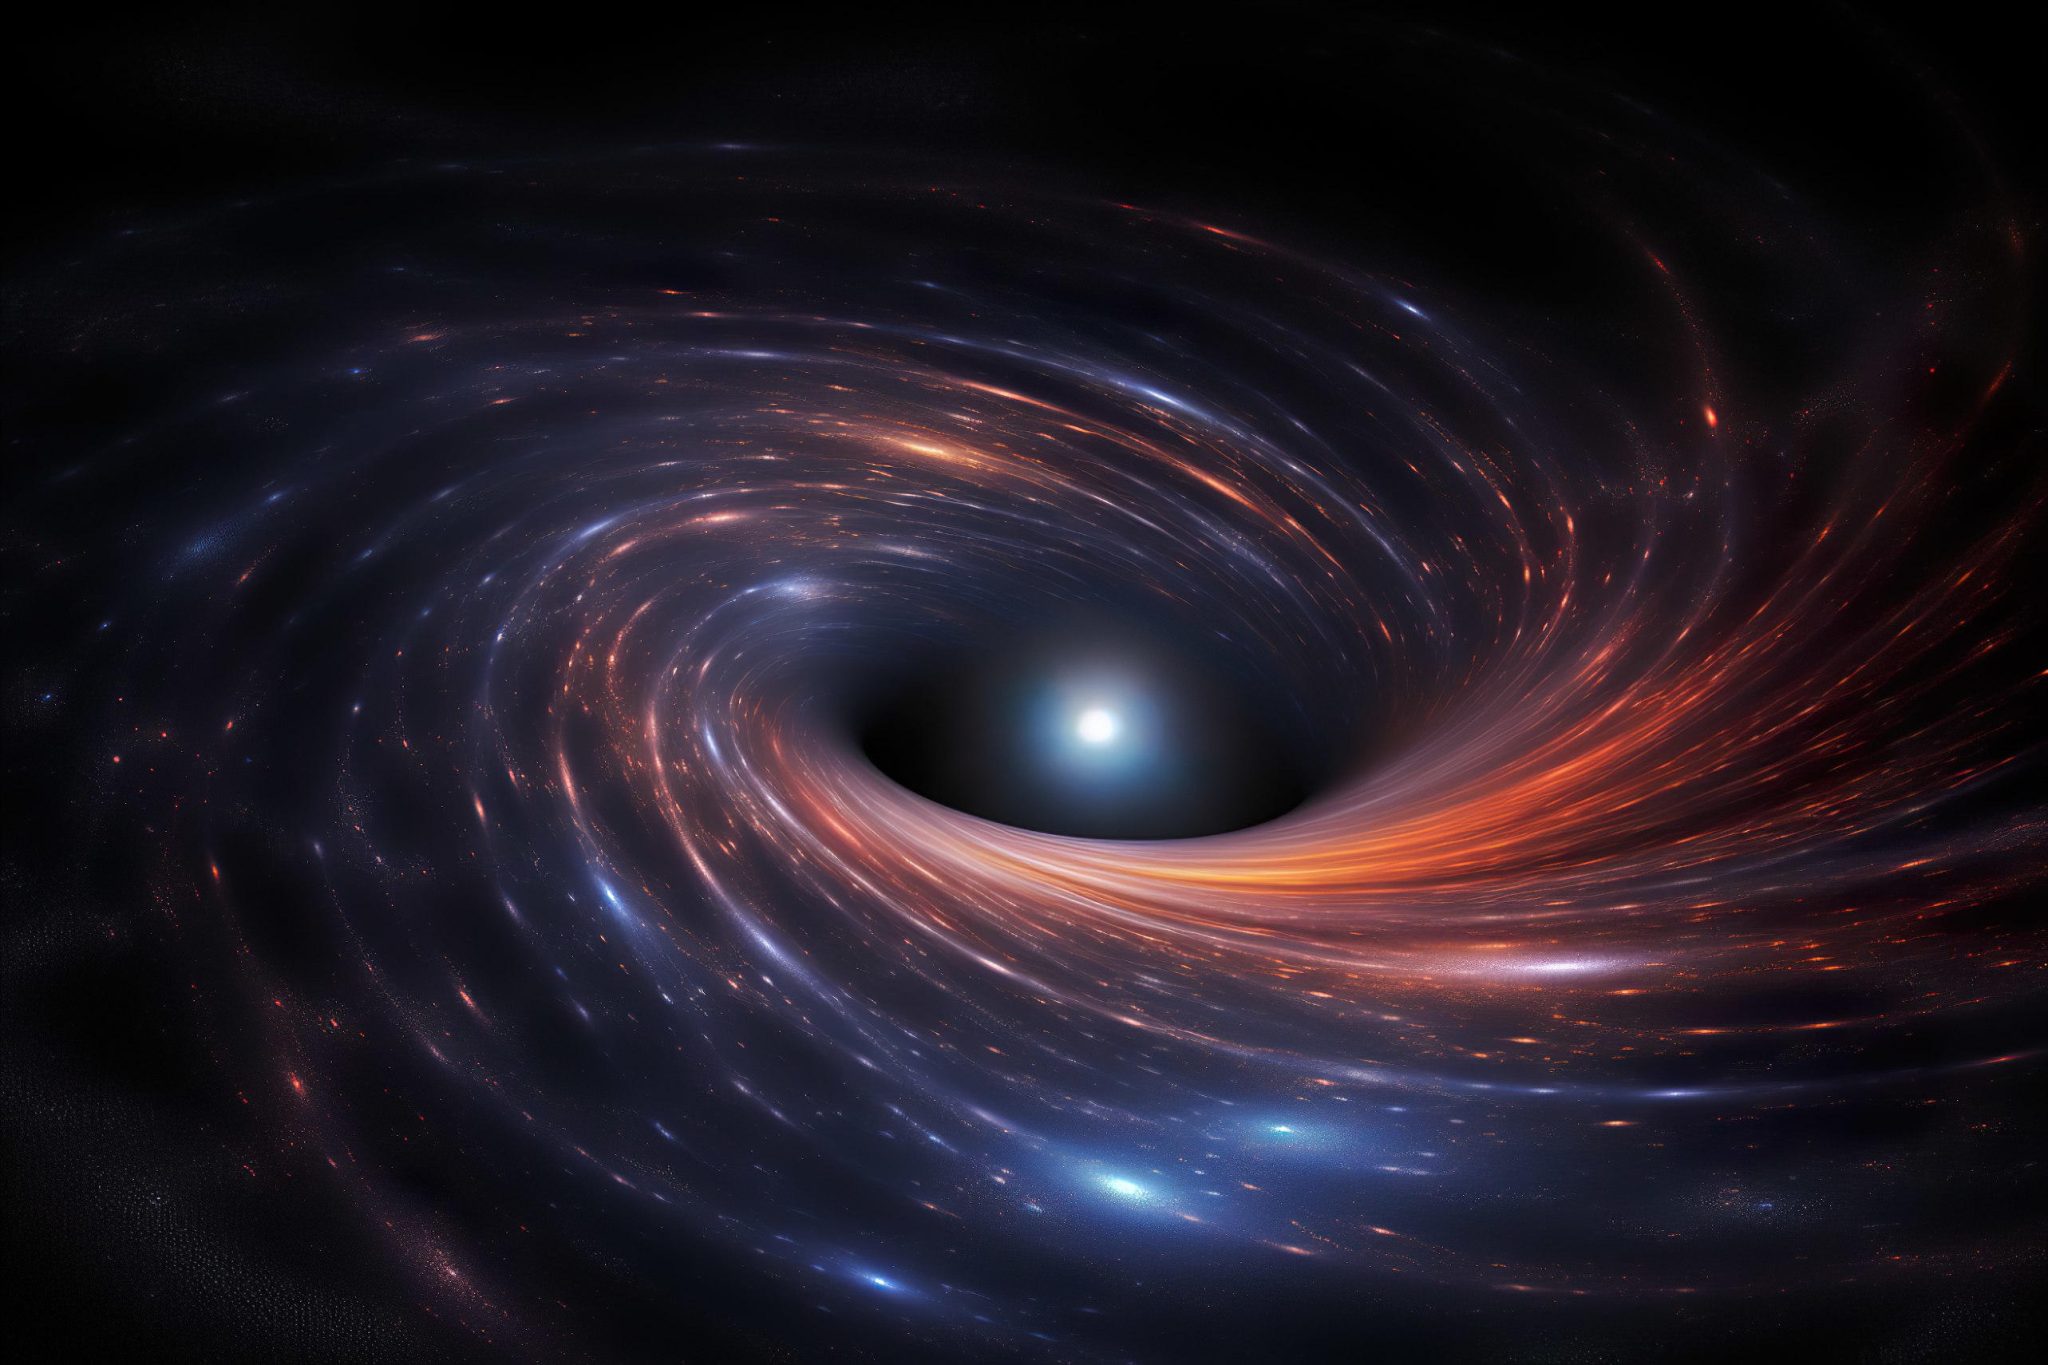 Dark matter gravitational vortex